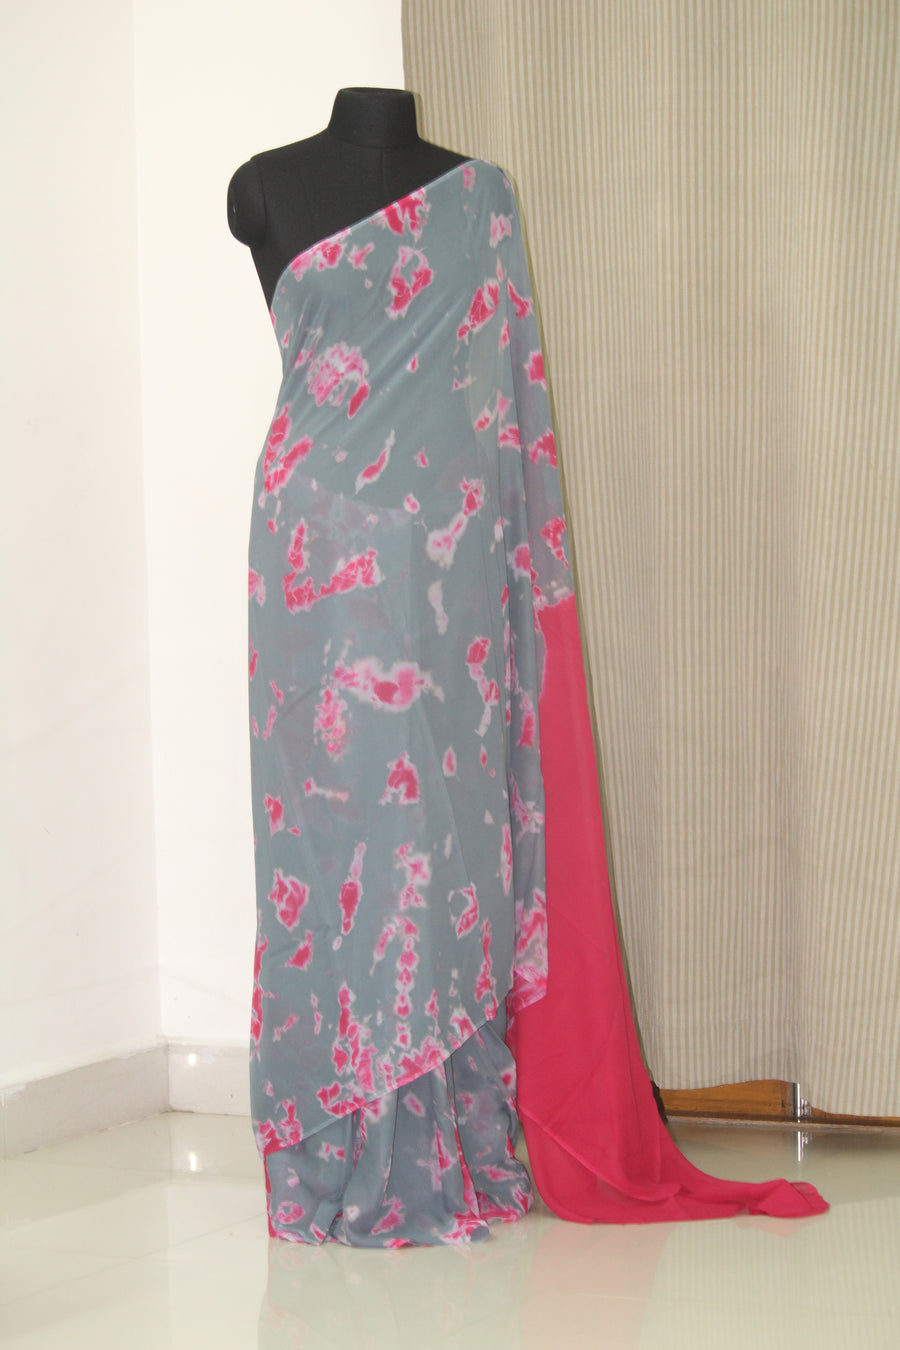 Shibori tie and dye georgette saree